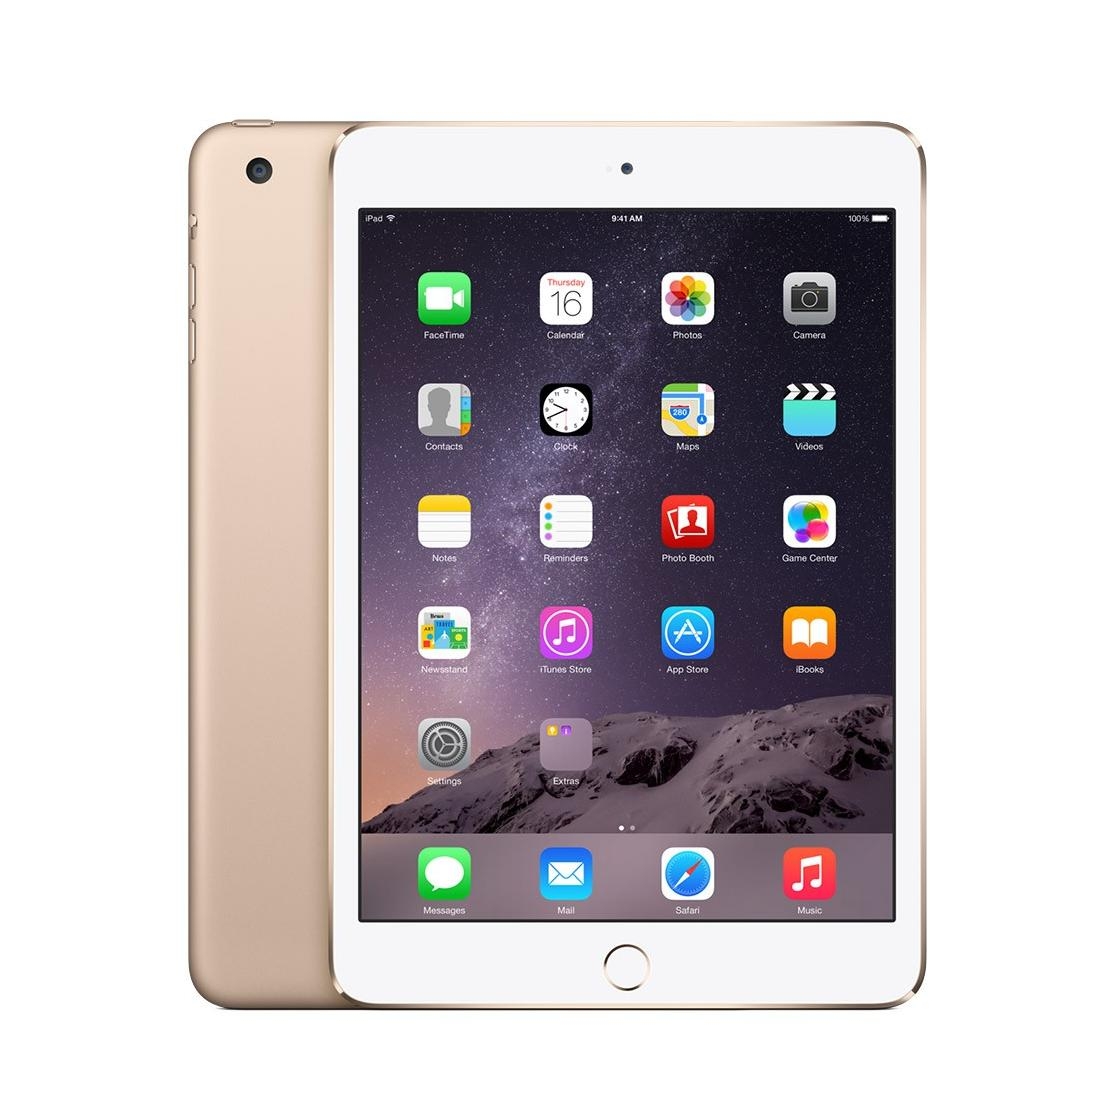 Apple iPad Mini Retina Display 3 Wi-Fi + 4G, 16GB, 7.9 in. (gold) Price